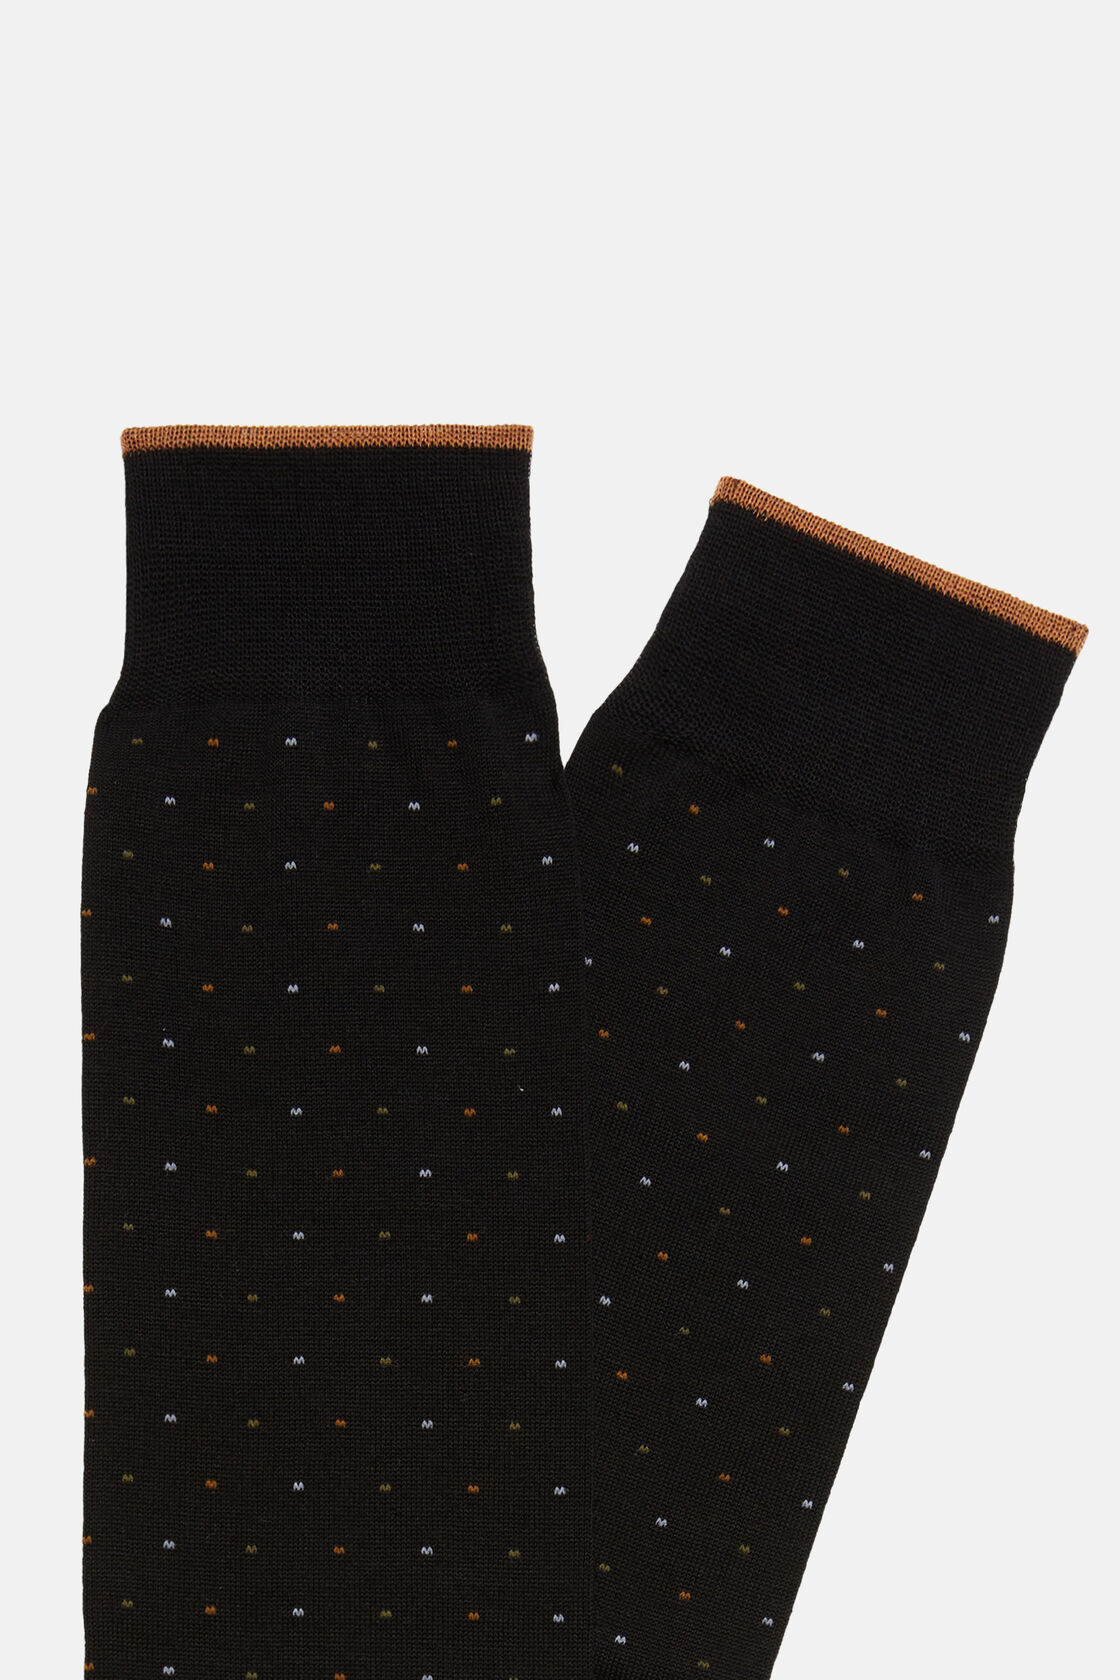 Chaussettes Motif Tête d'Épingle En Coton, Noir, hi-res